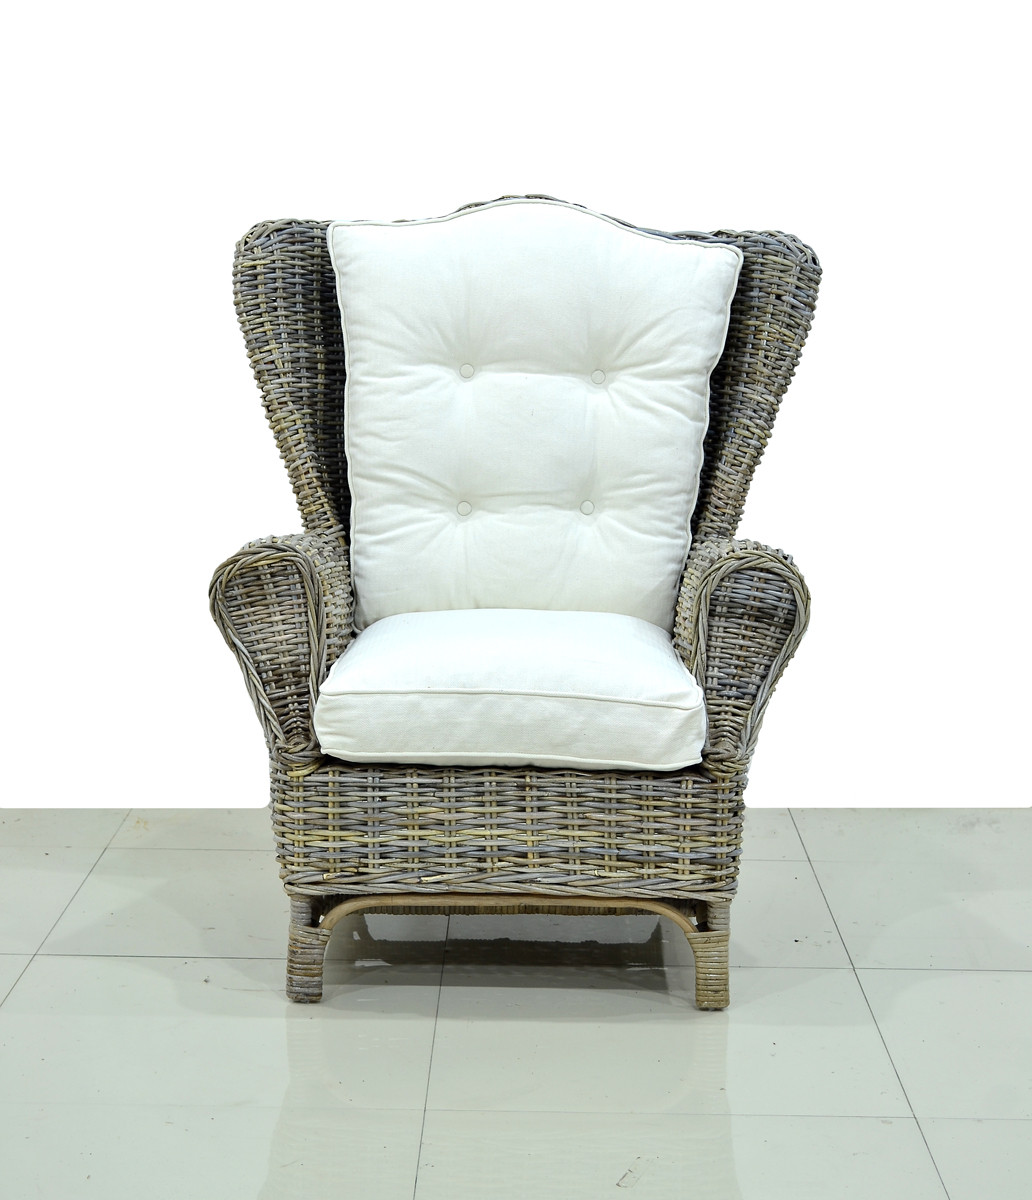 Кресло с пуфом из натурального ротанга CRU- Винг kp190122